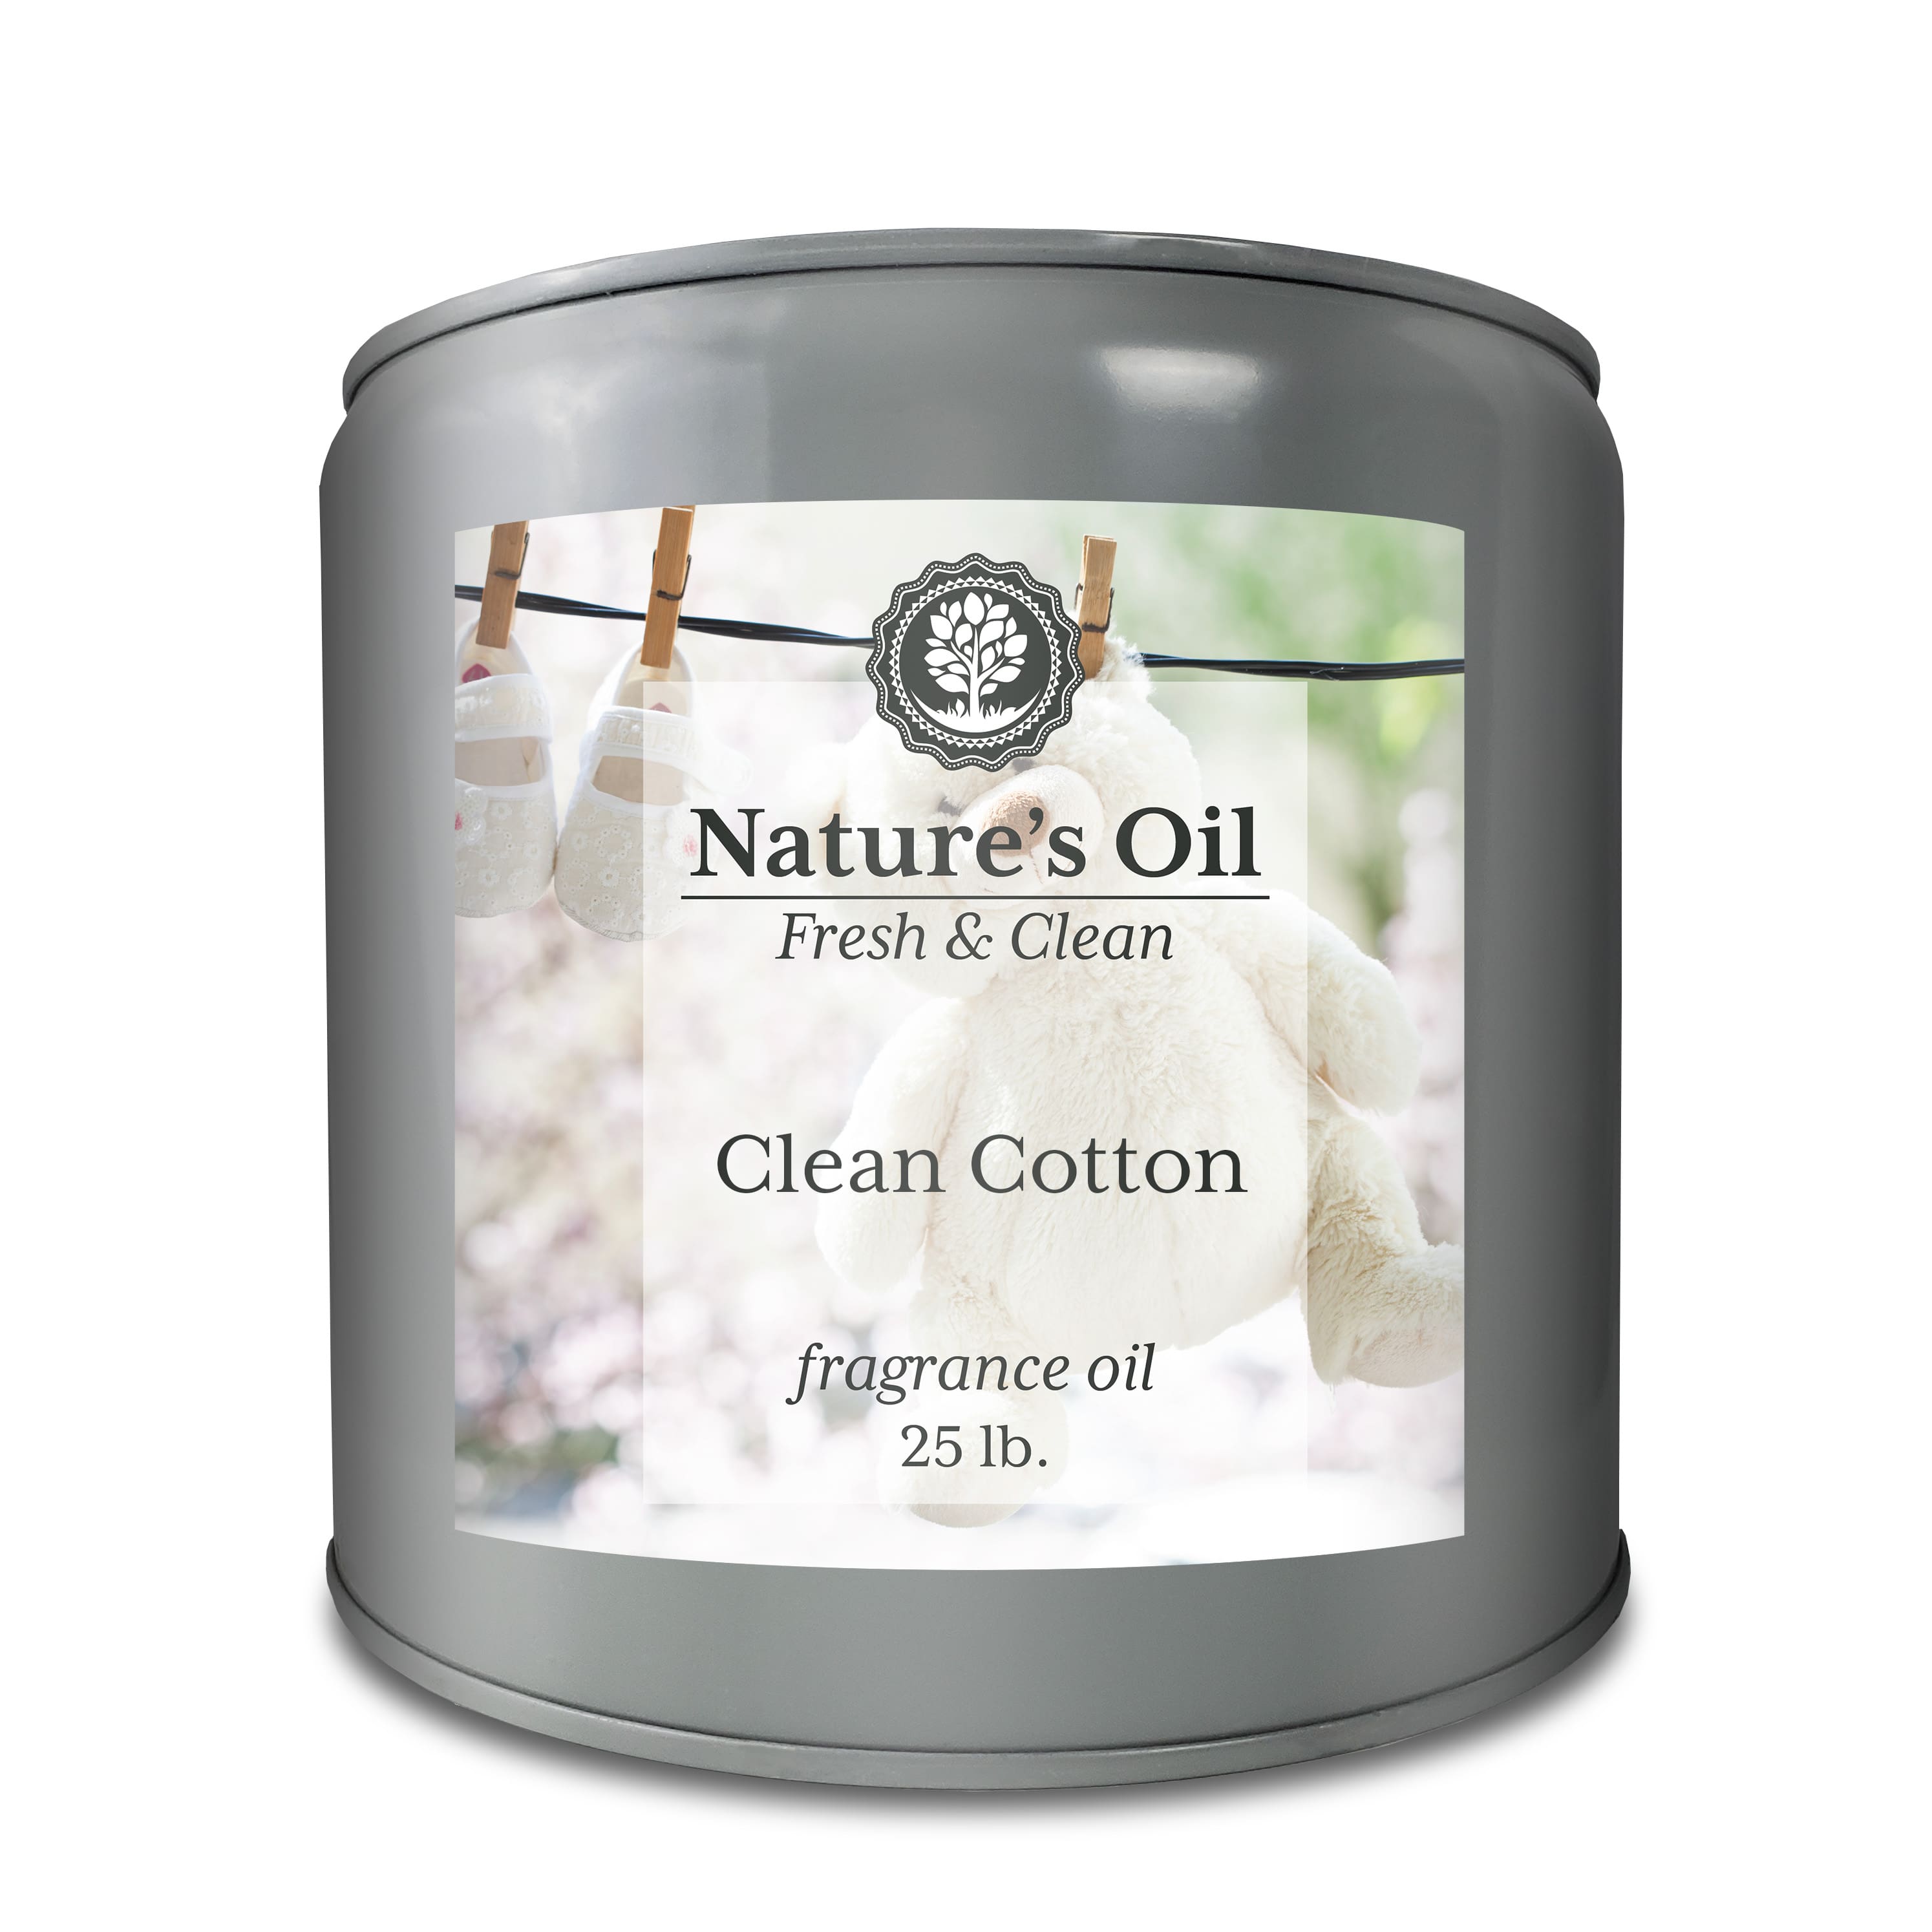 Clean Cotton Fragrance Oil  Nature's Oil Premium Fragrances